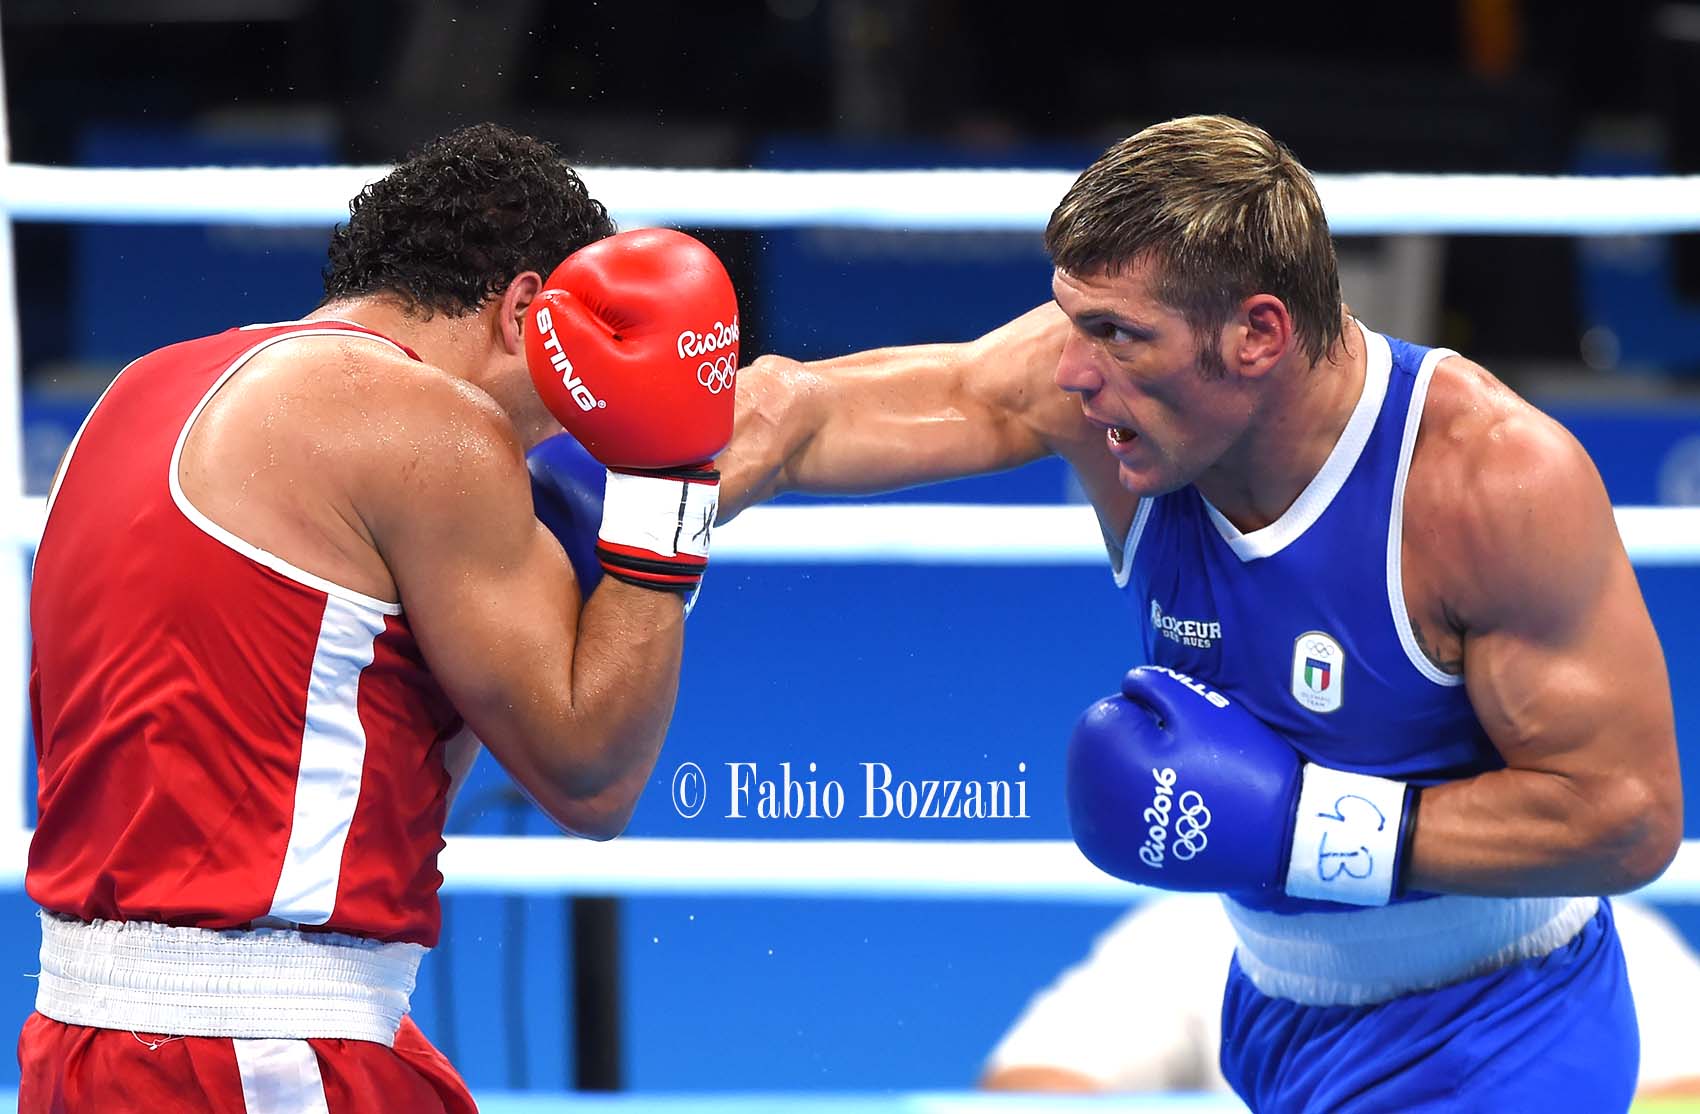 Rio2016 Boxing Day 5: Torna sul ring Russo, per lui i quarti vs Tishchenko H 18.30 #ItaBoxing #ItaliaTeam 